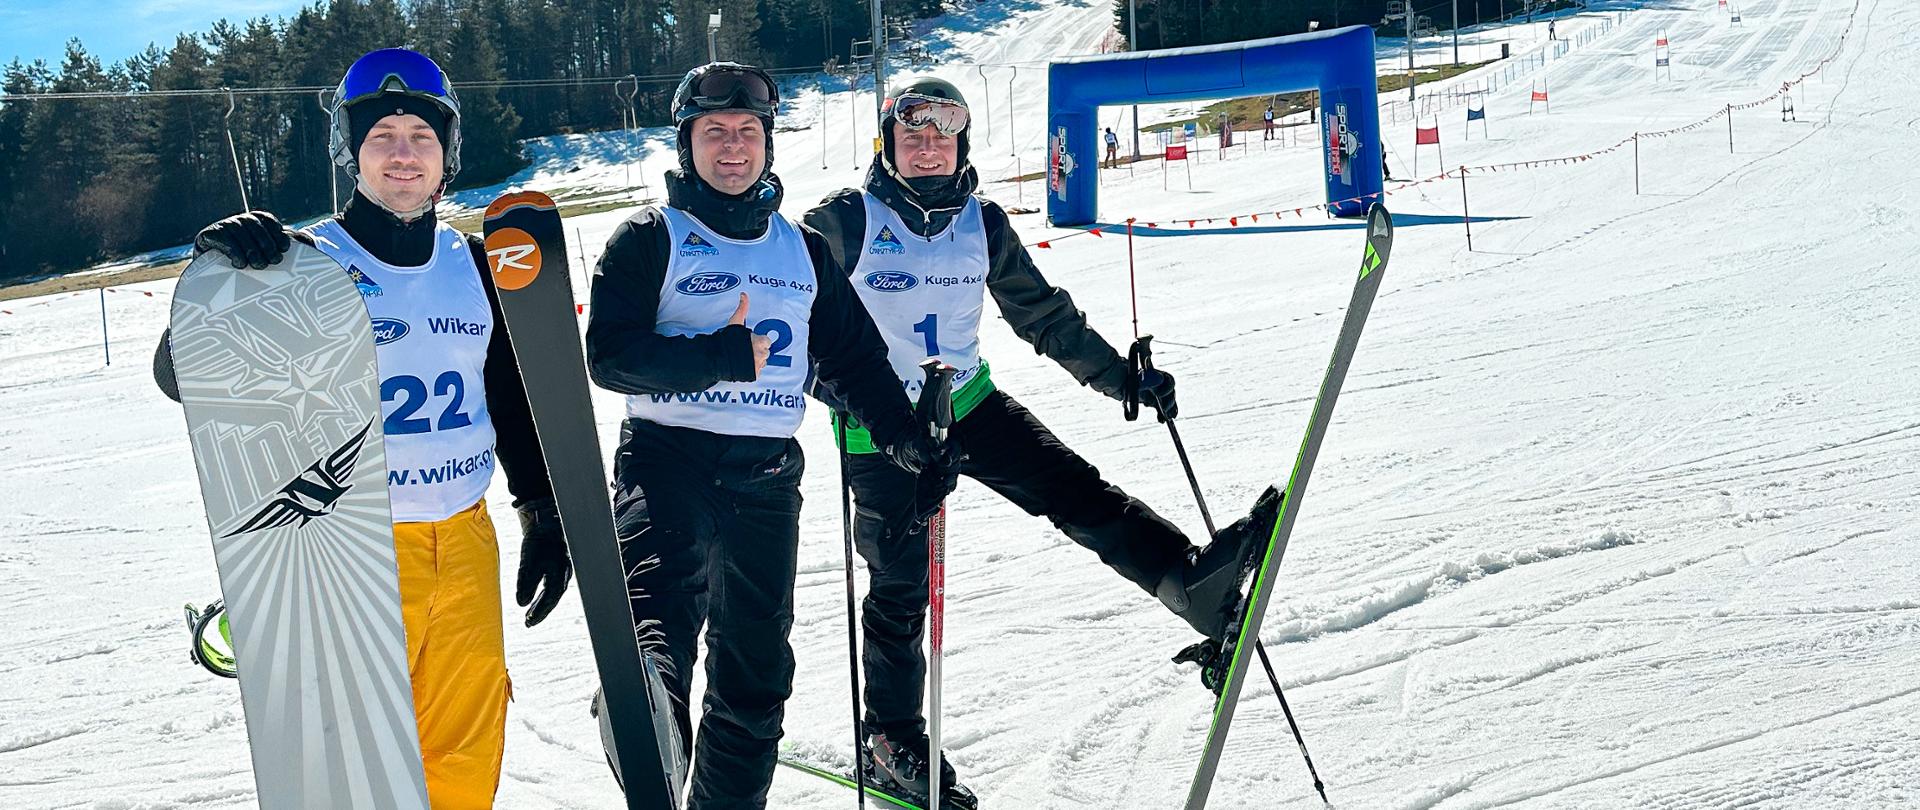 Zdjęcie przedstawia trzech zawodników ubranych w koszulki z numerami startowymi. Dwóch z założonymi nartami oraz trzeci trzymający deskę snowboardową. Zawodnicy pozują na śniegu, w tle widać tor slalomu narciarskiego/snowboardowego oraz metę.